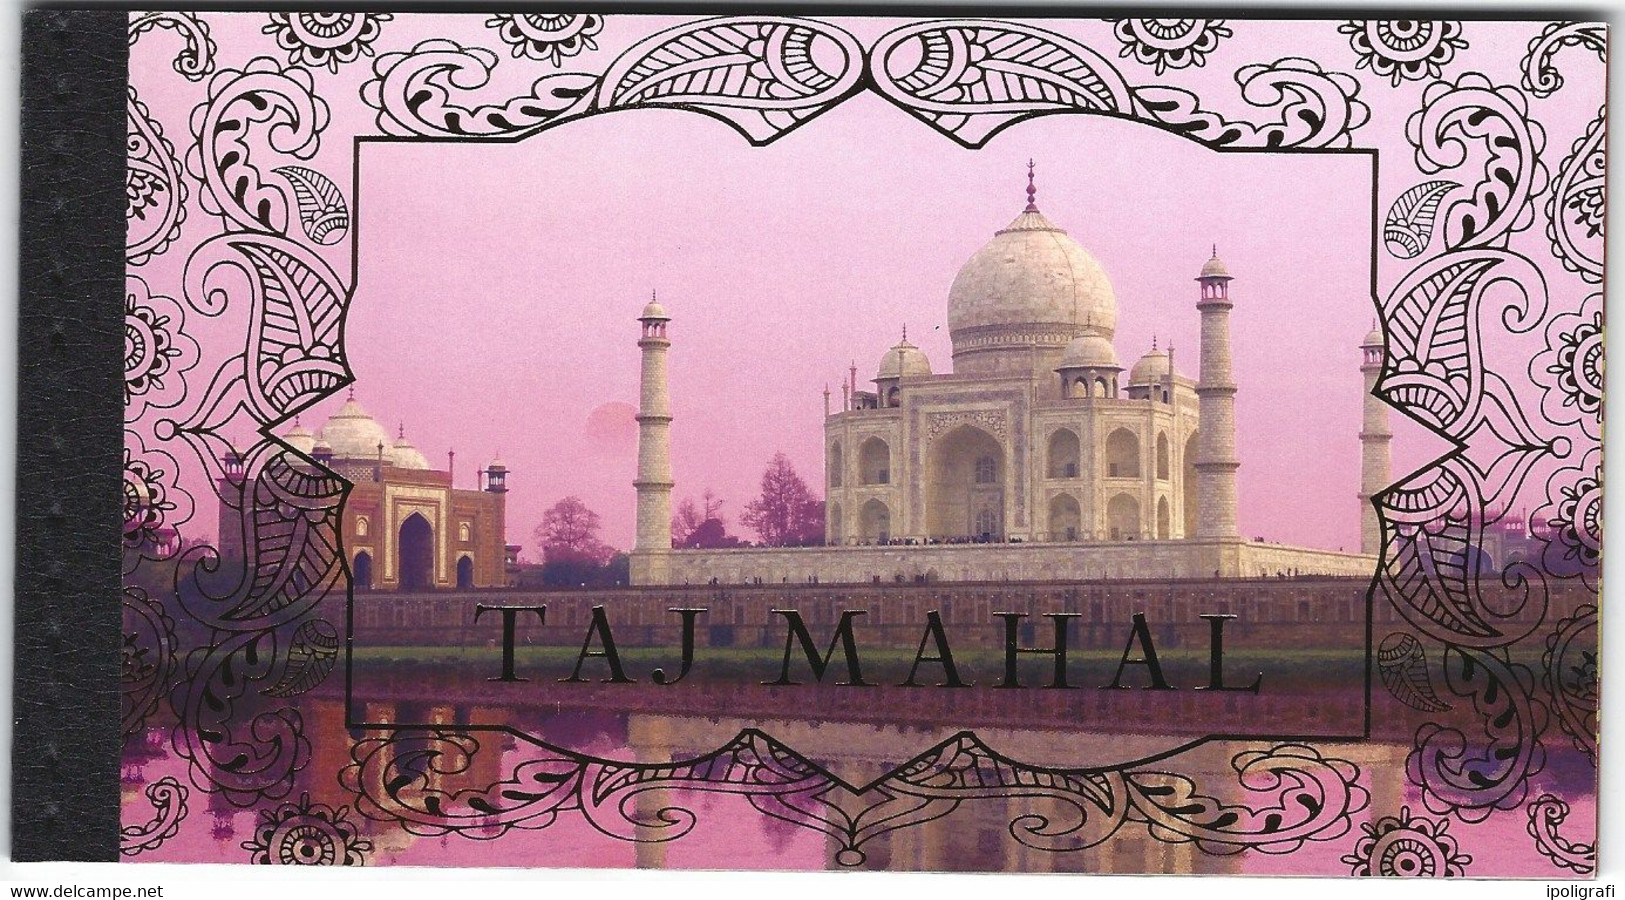 ONU Ginevra 2014 Unesco Patrimonio Mondiale: India, Il Taj Mahal Carnet Prestige - Libretti